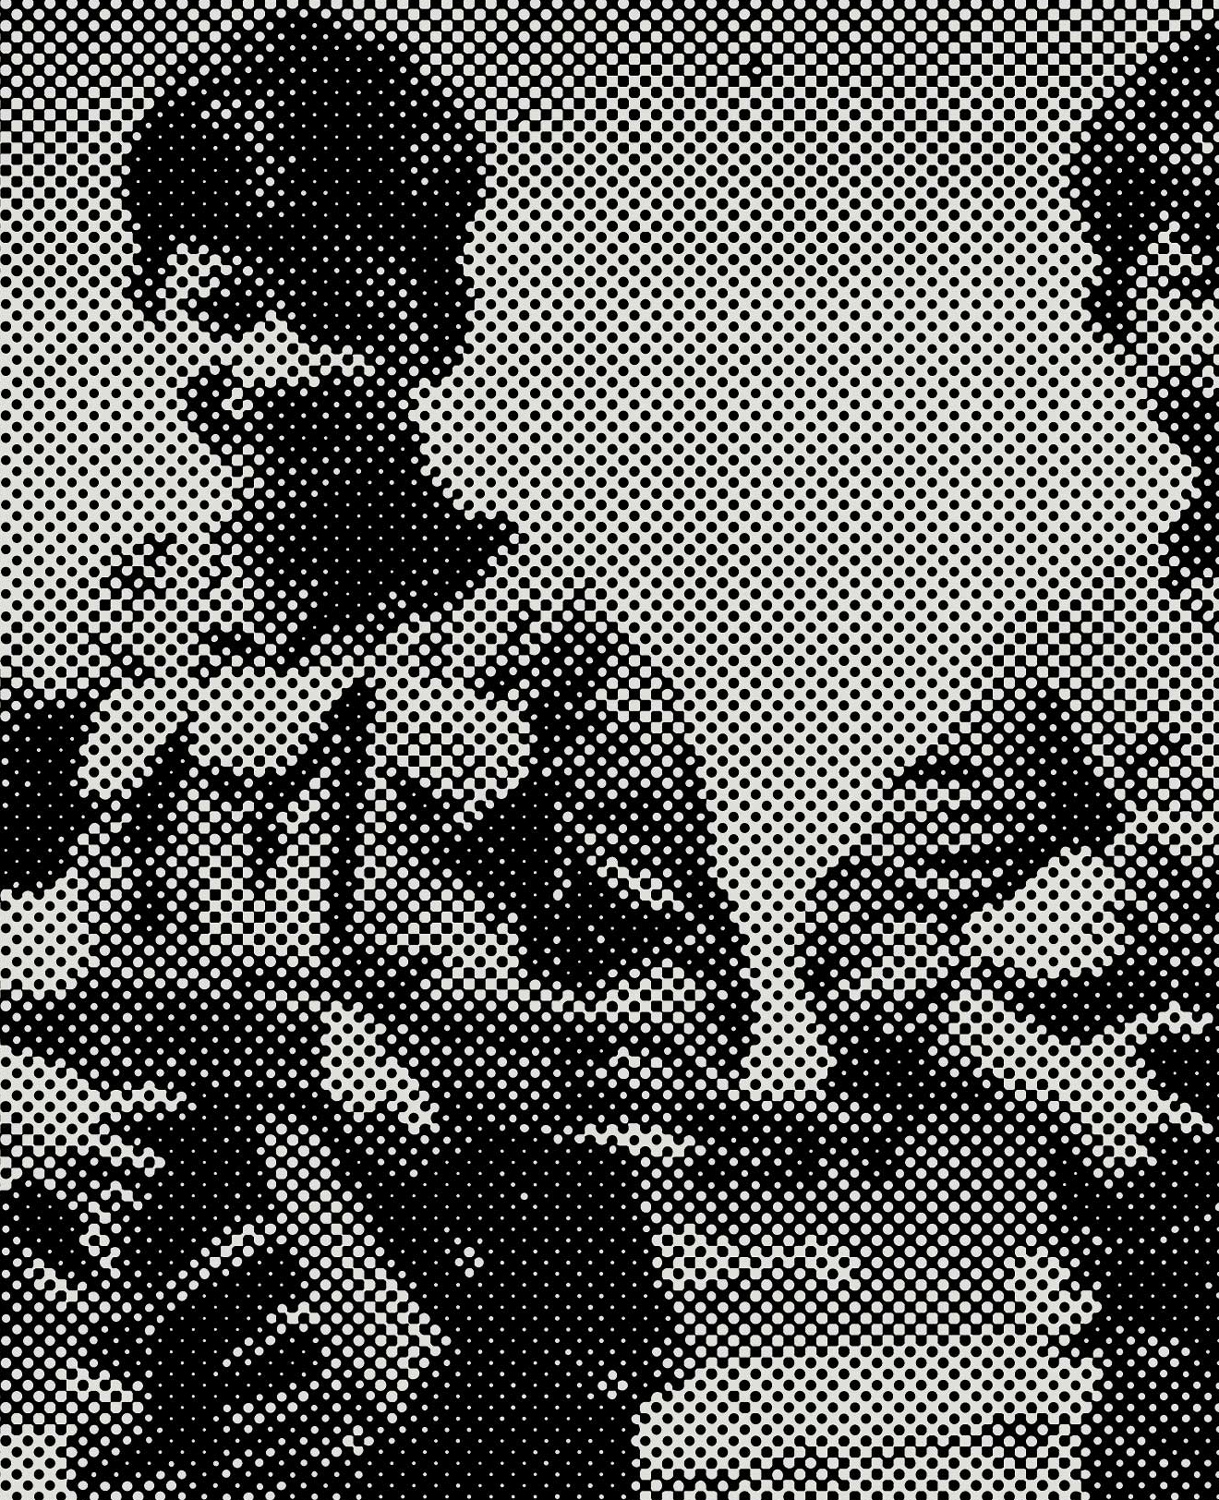 1968 [Child soldiers of the Dong Rai Regiment, Vietnam], 2018 - Vue suppl&eacute;mentaire